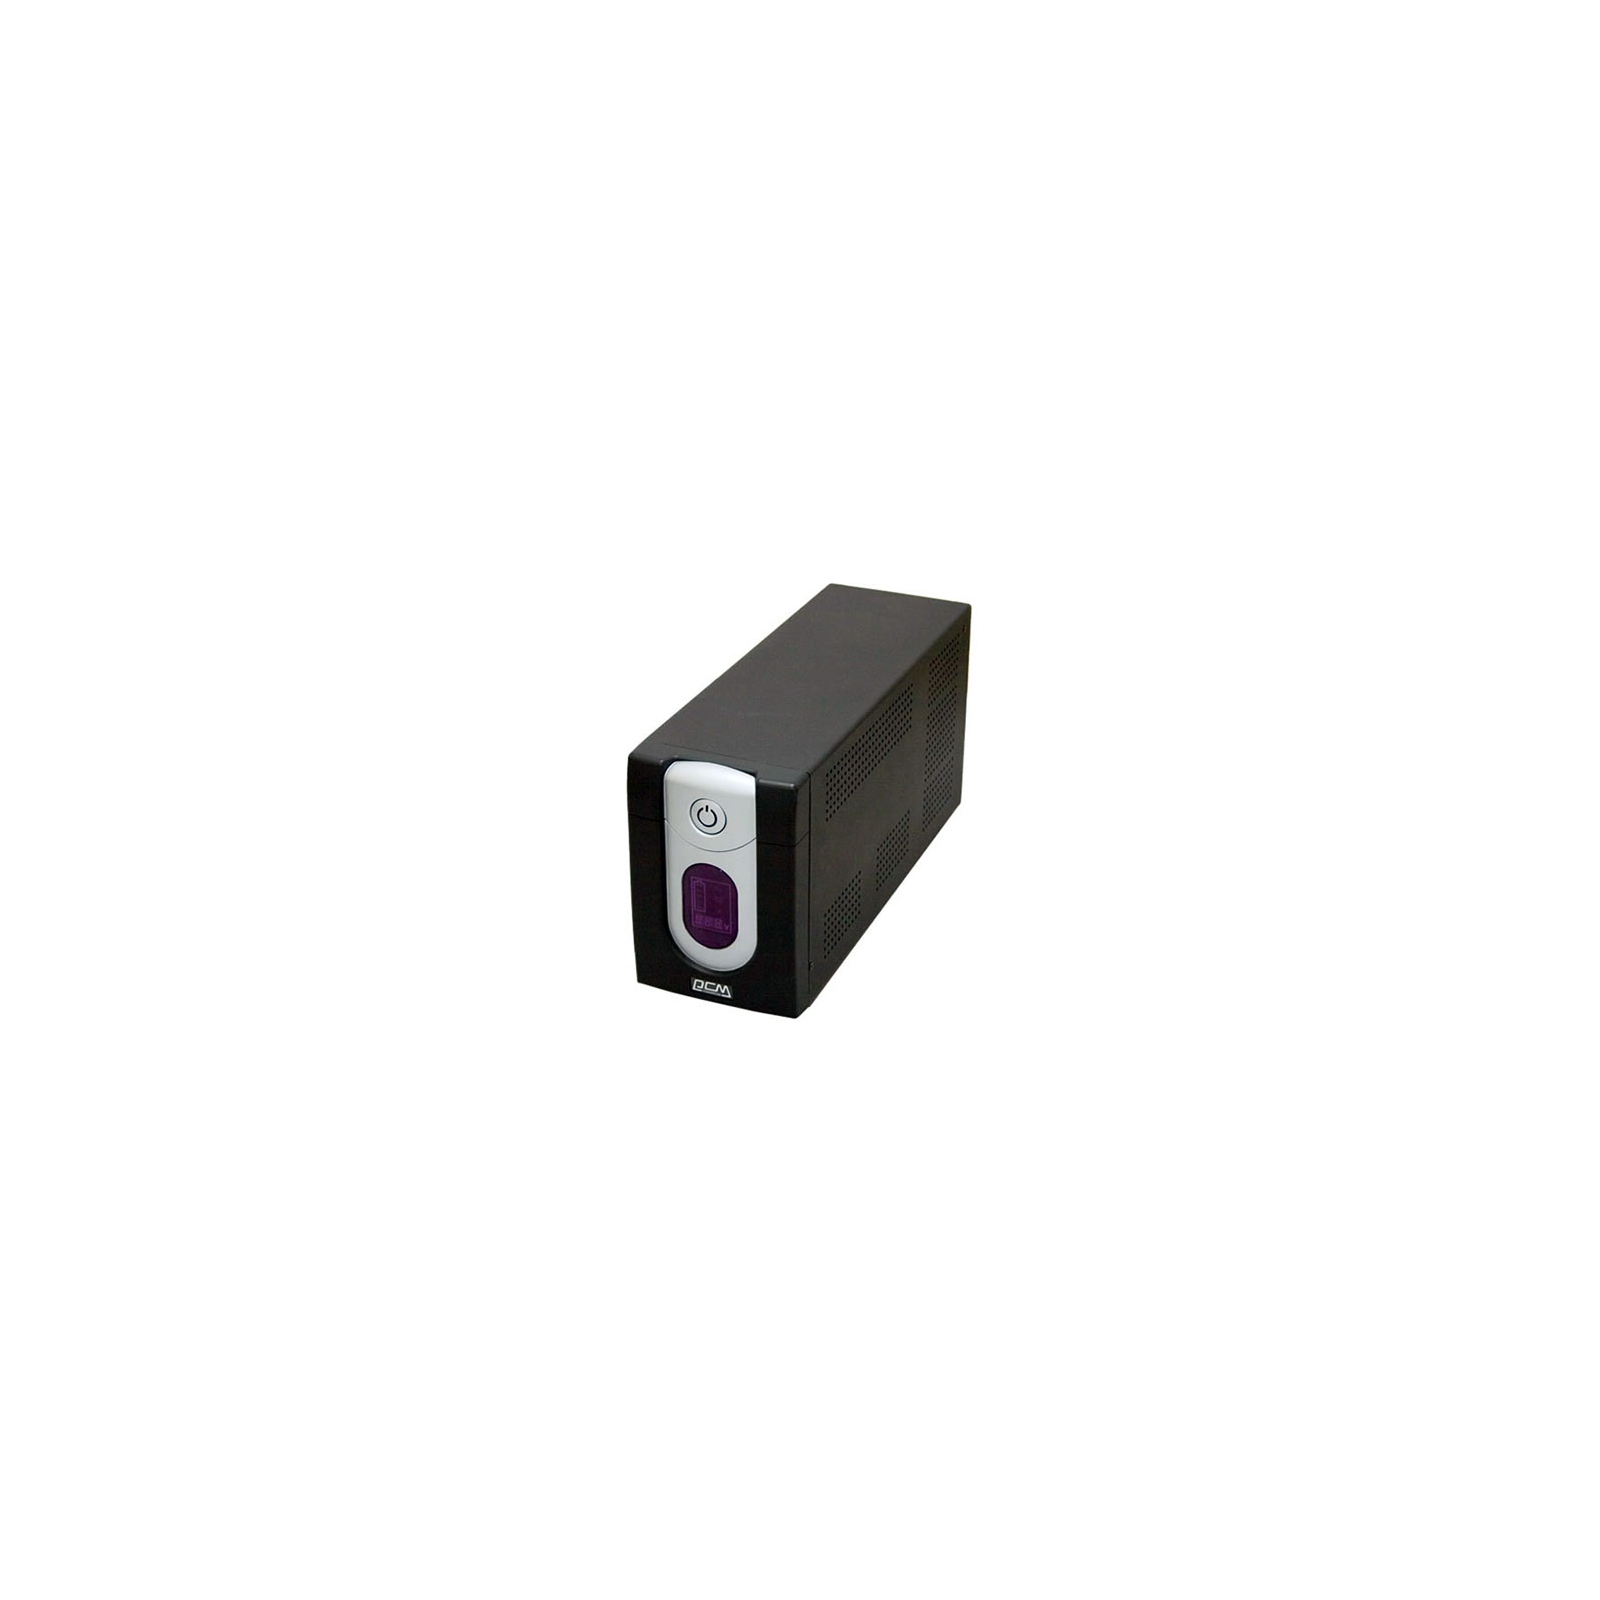 Пристрій безперебійного живлення IMD-1500AP Powercom (IMD-1500 AP)